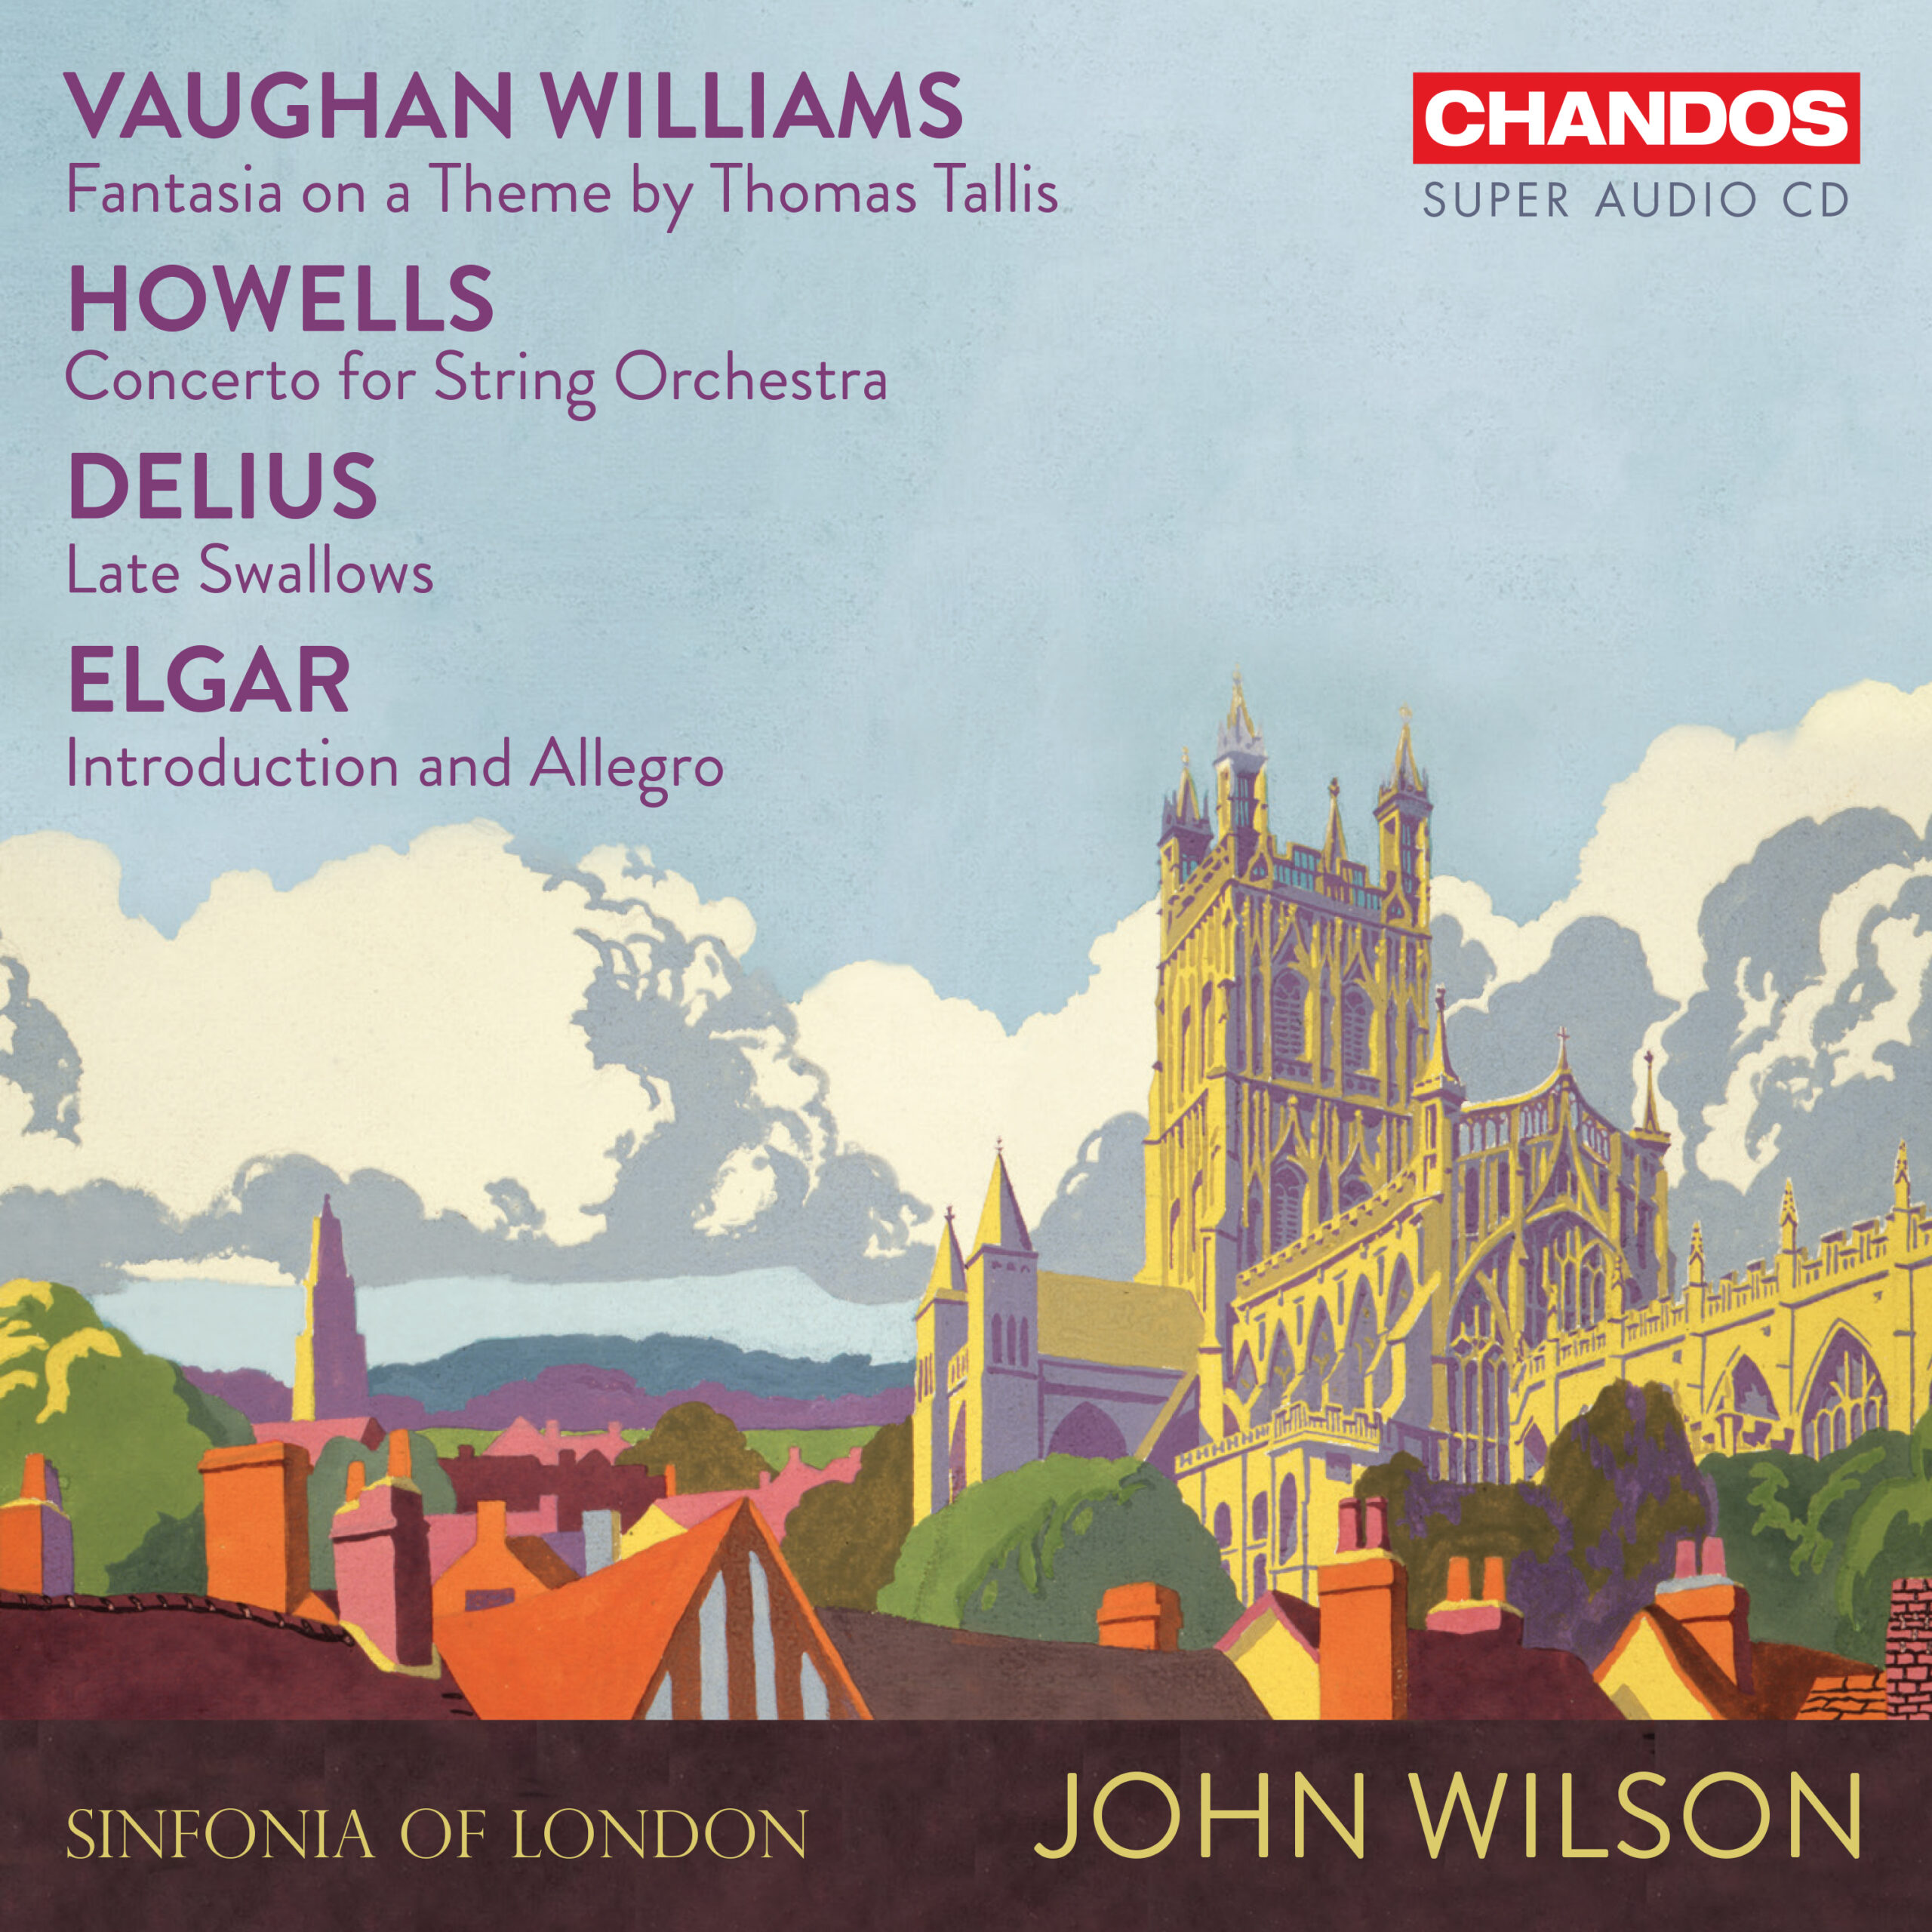 Vaughan Williams, Howells, Delius, Elgar